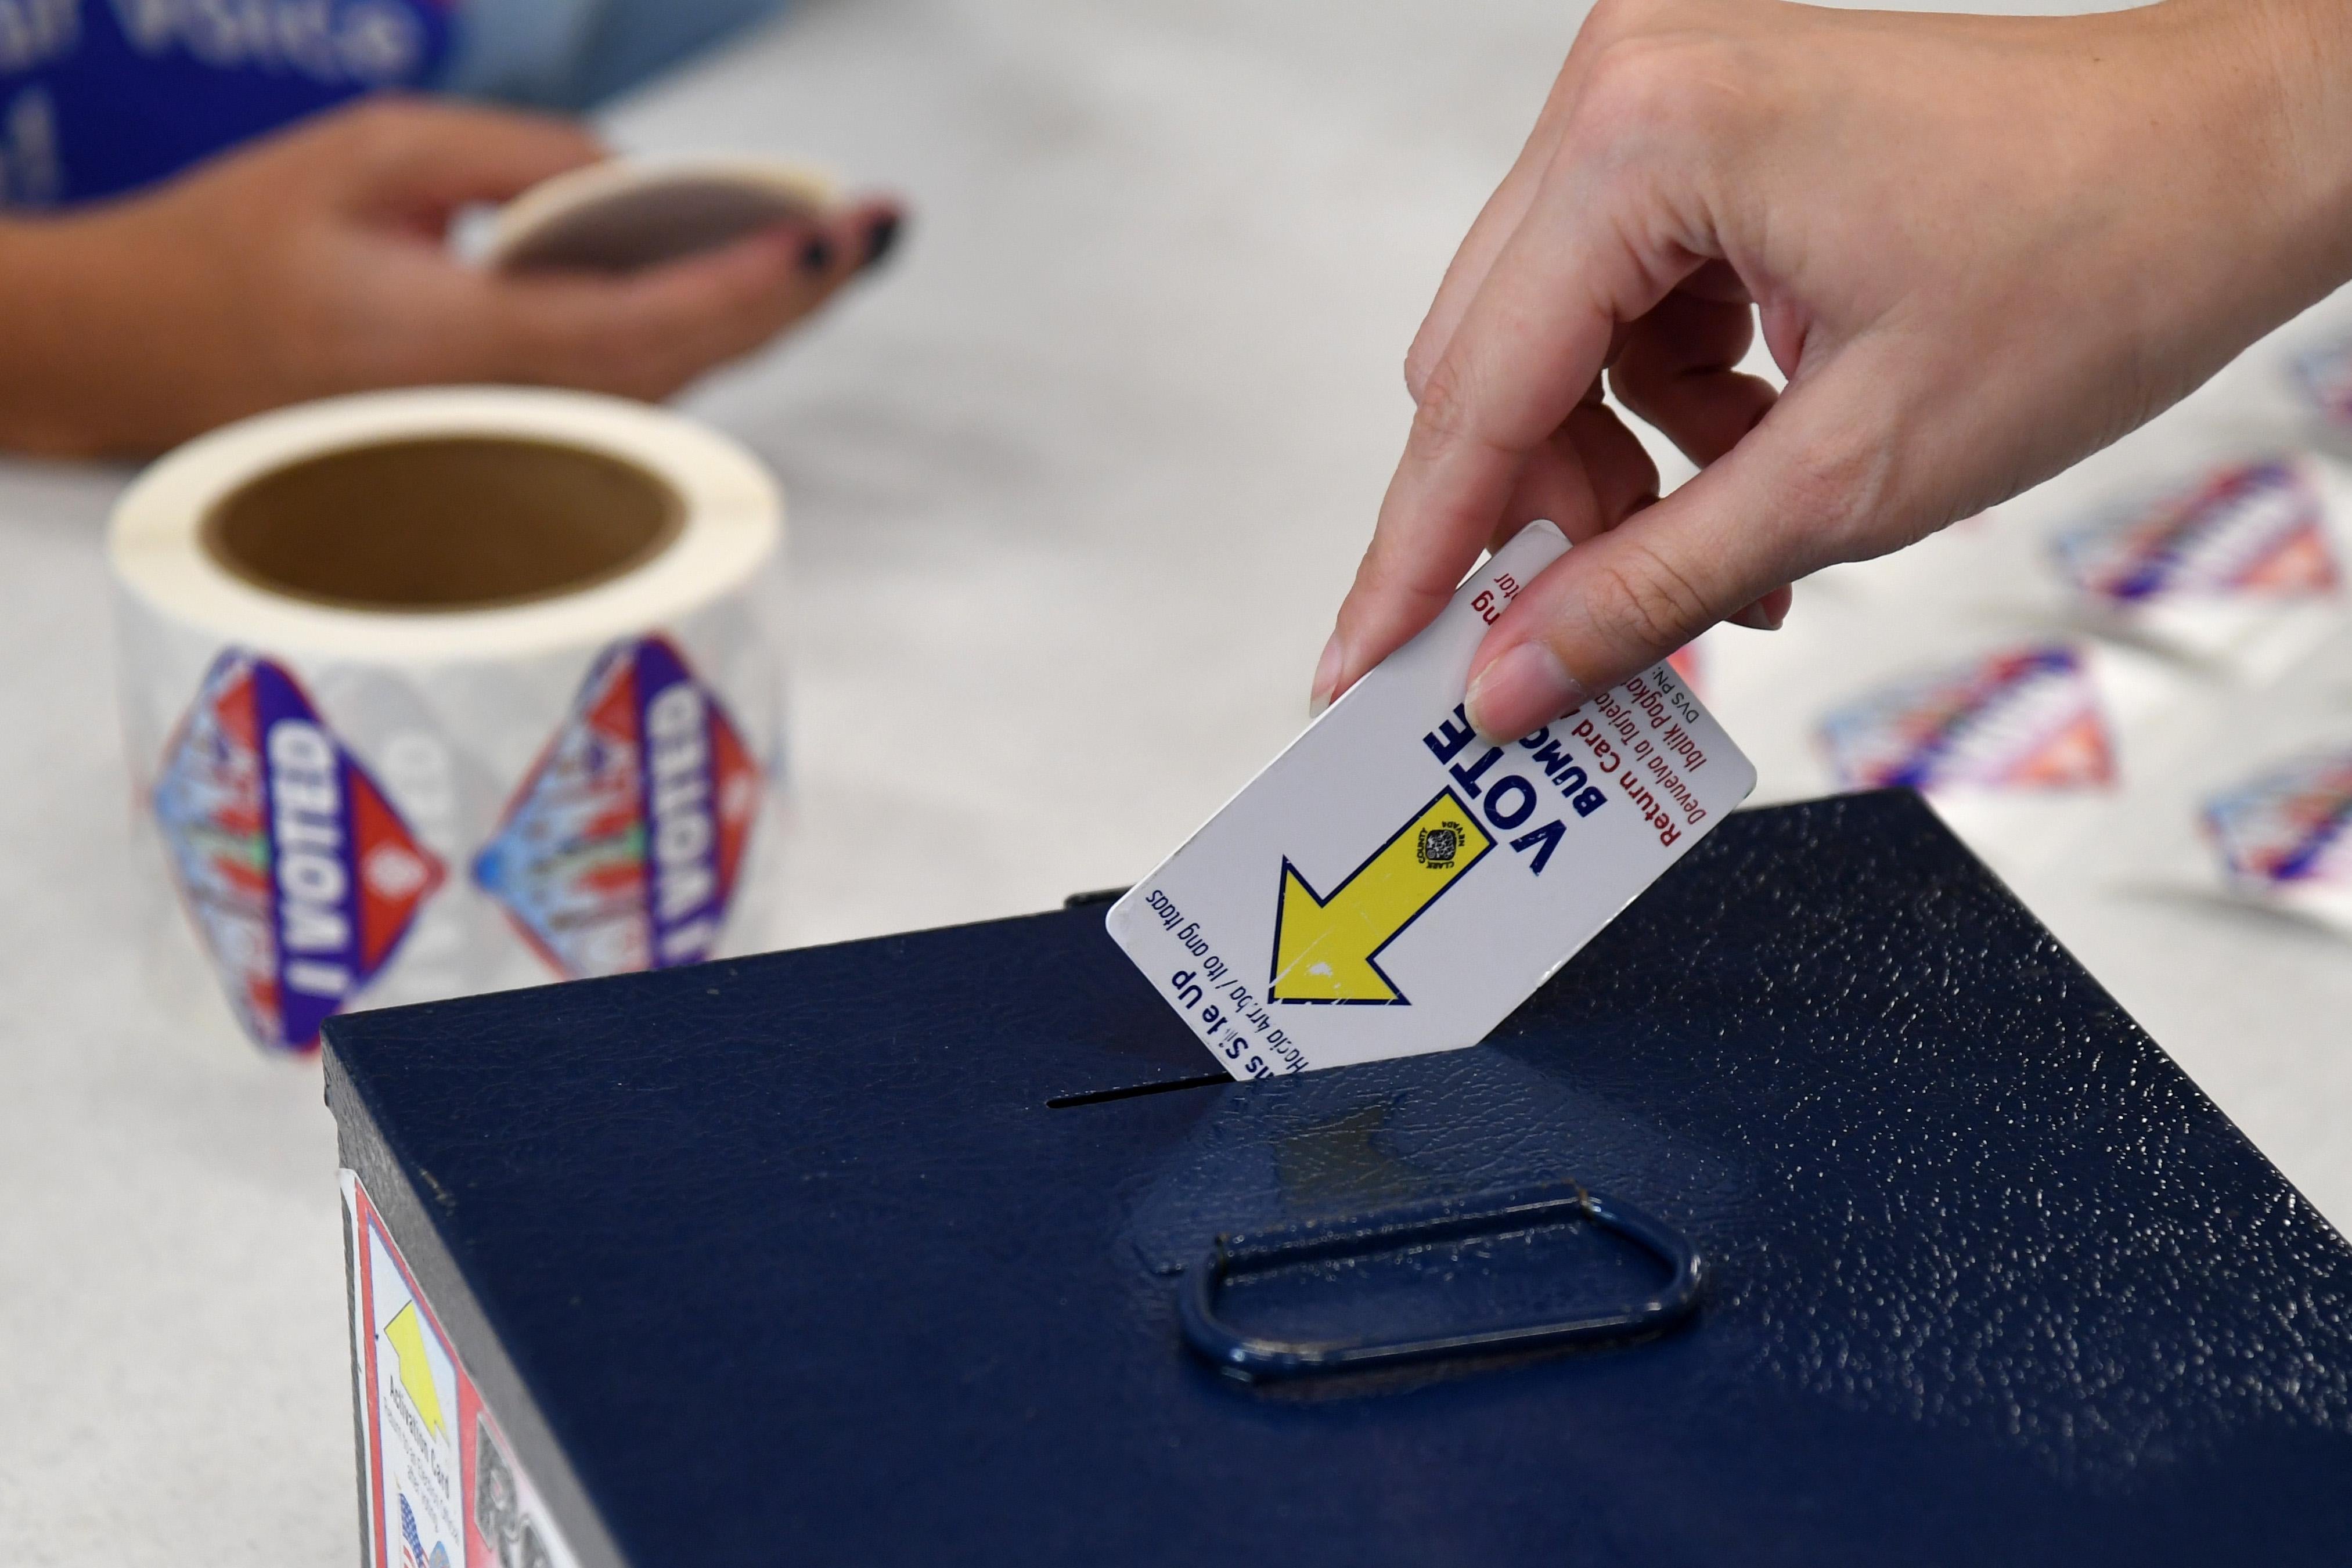 A hand drops a card in a ballot box.